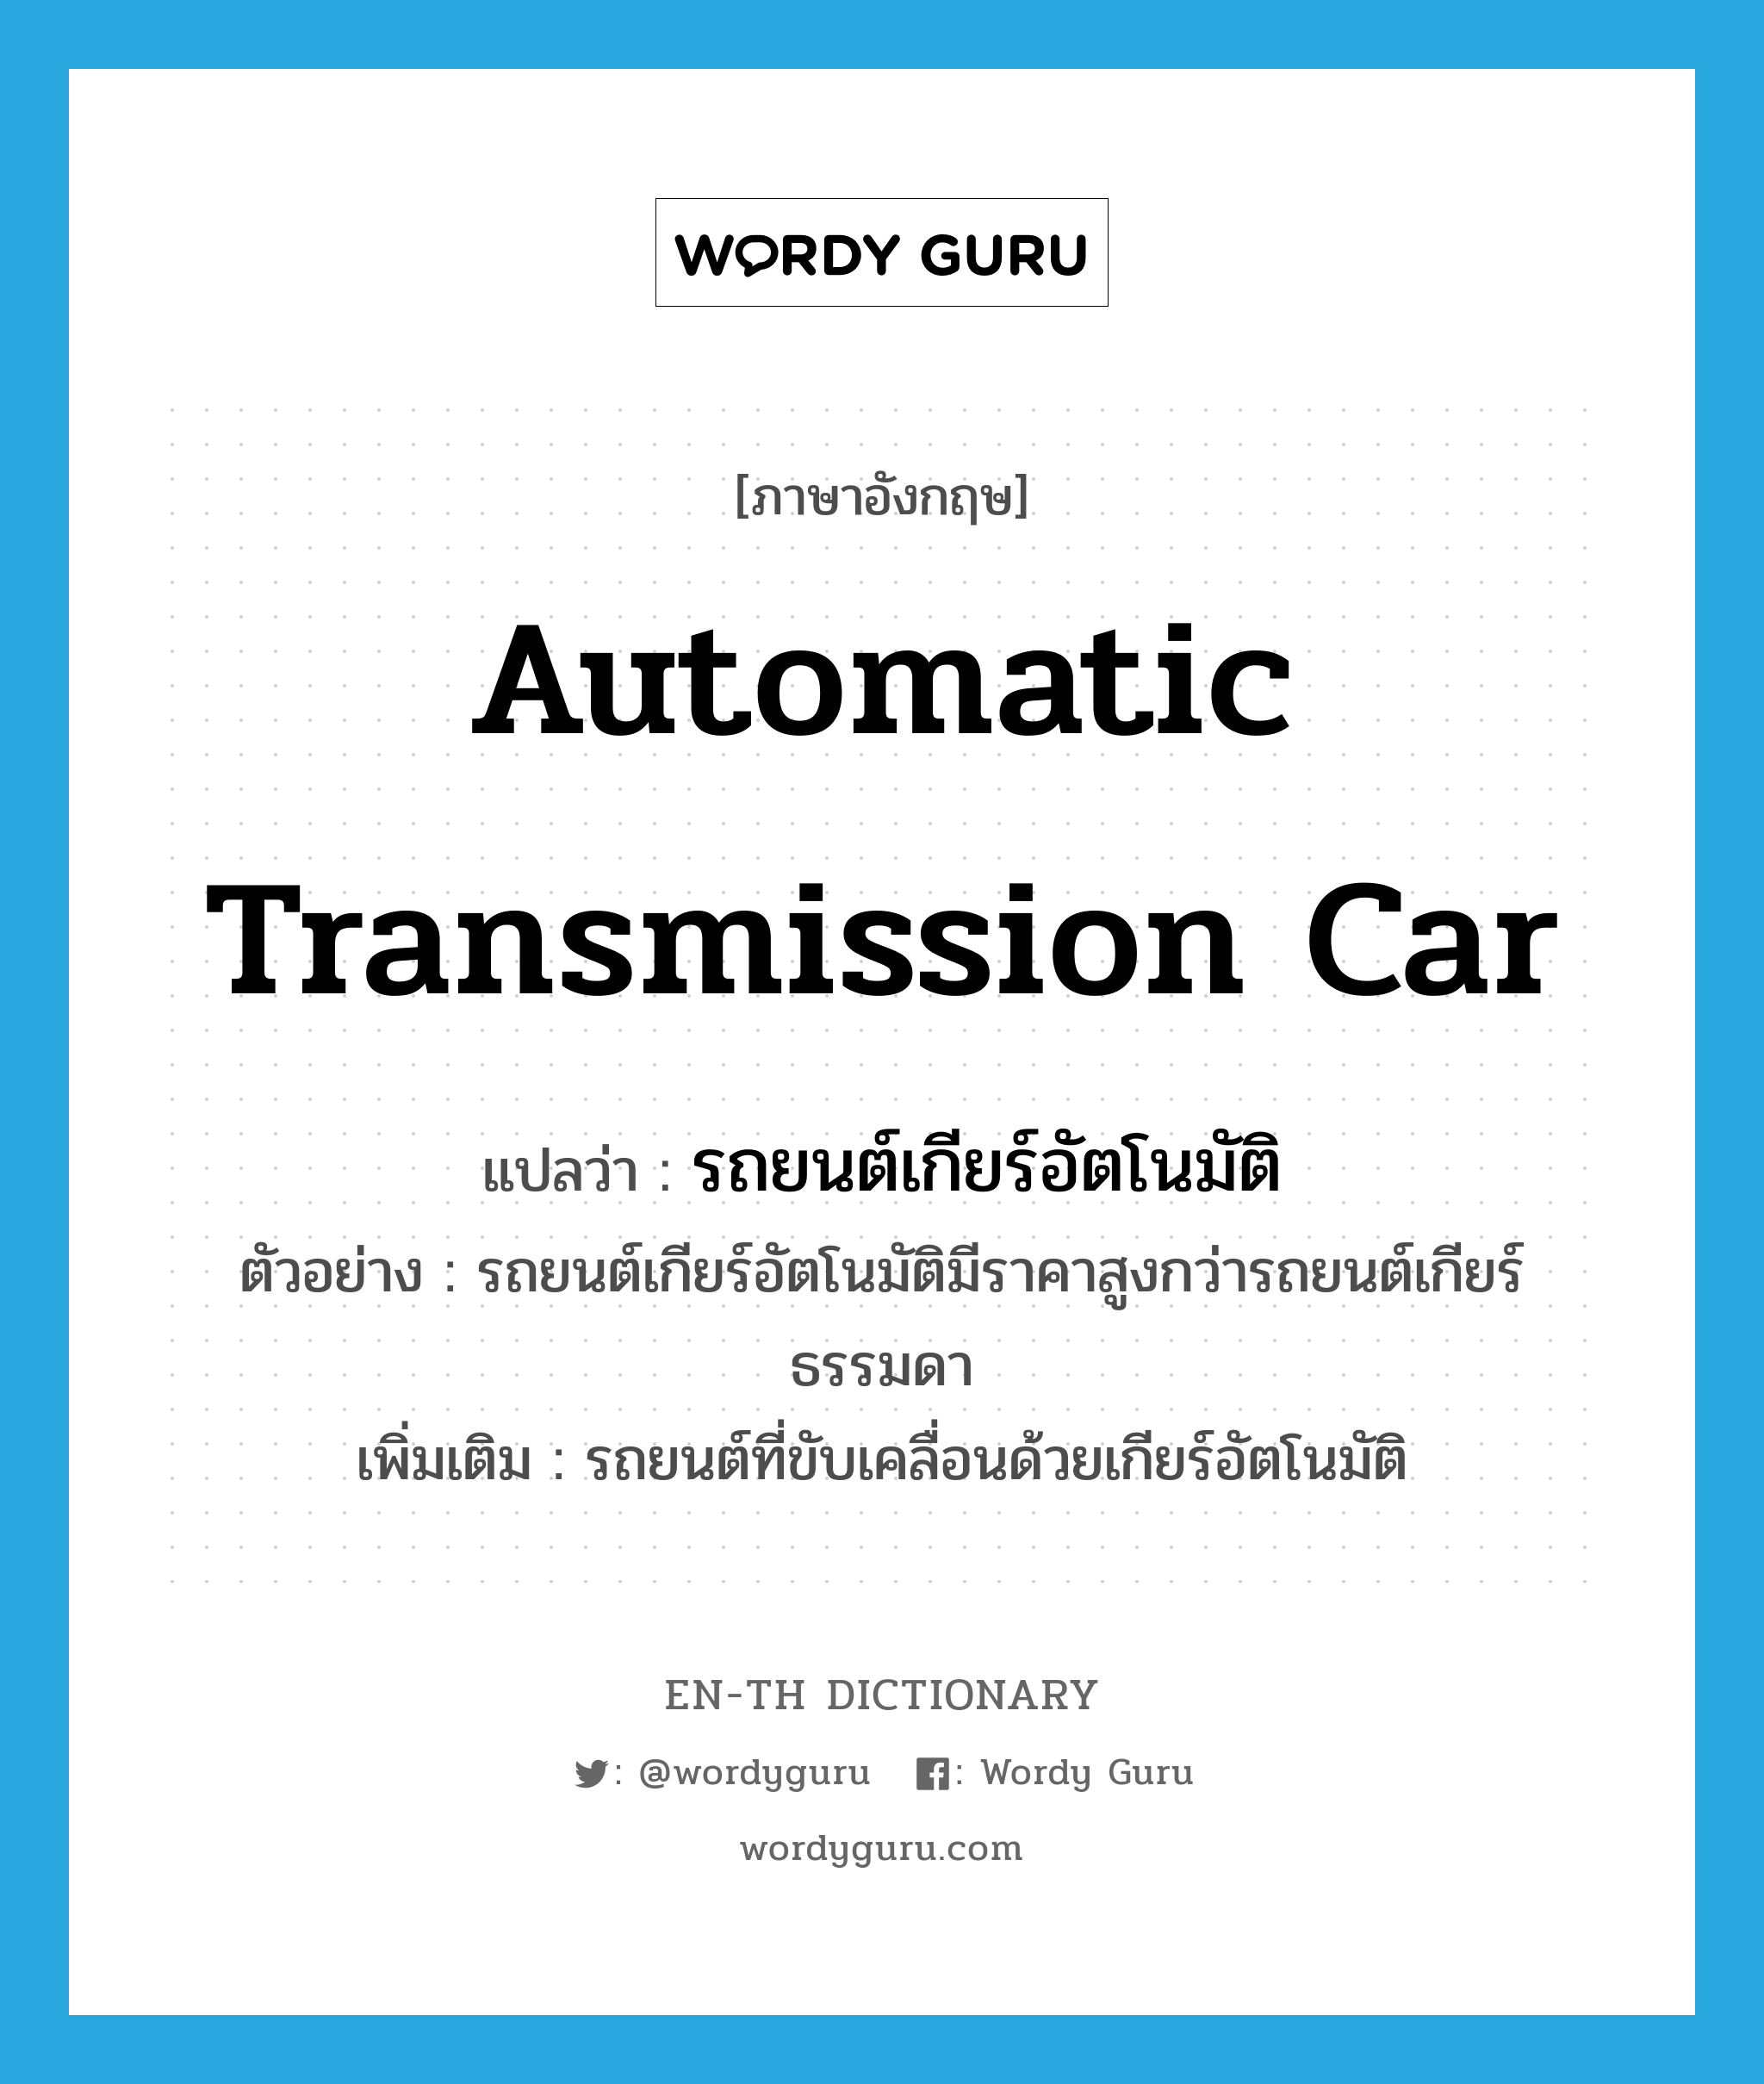 automatic transmission car แปลว่า?, คำศัพท์ภาษาอังกฤษ automatic transmission car แปลว่า รถยนต์เกียร์อัตโนมัติ ประเภท N ตัวอย่าง รถยนต์เกียร์อัตโนมัติมีราคาสูงกว่ารถยนต์เกียร์ธรรมดา เพิ่มเติม รถยนต์ที่ขับเคลื่อนด้วยเกียร์อัตโนมัติ หมวด N